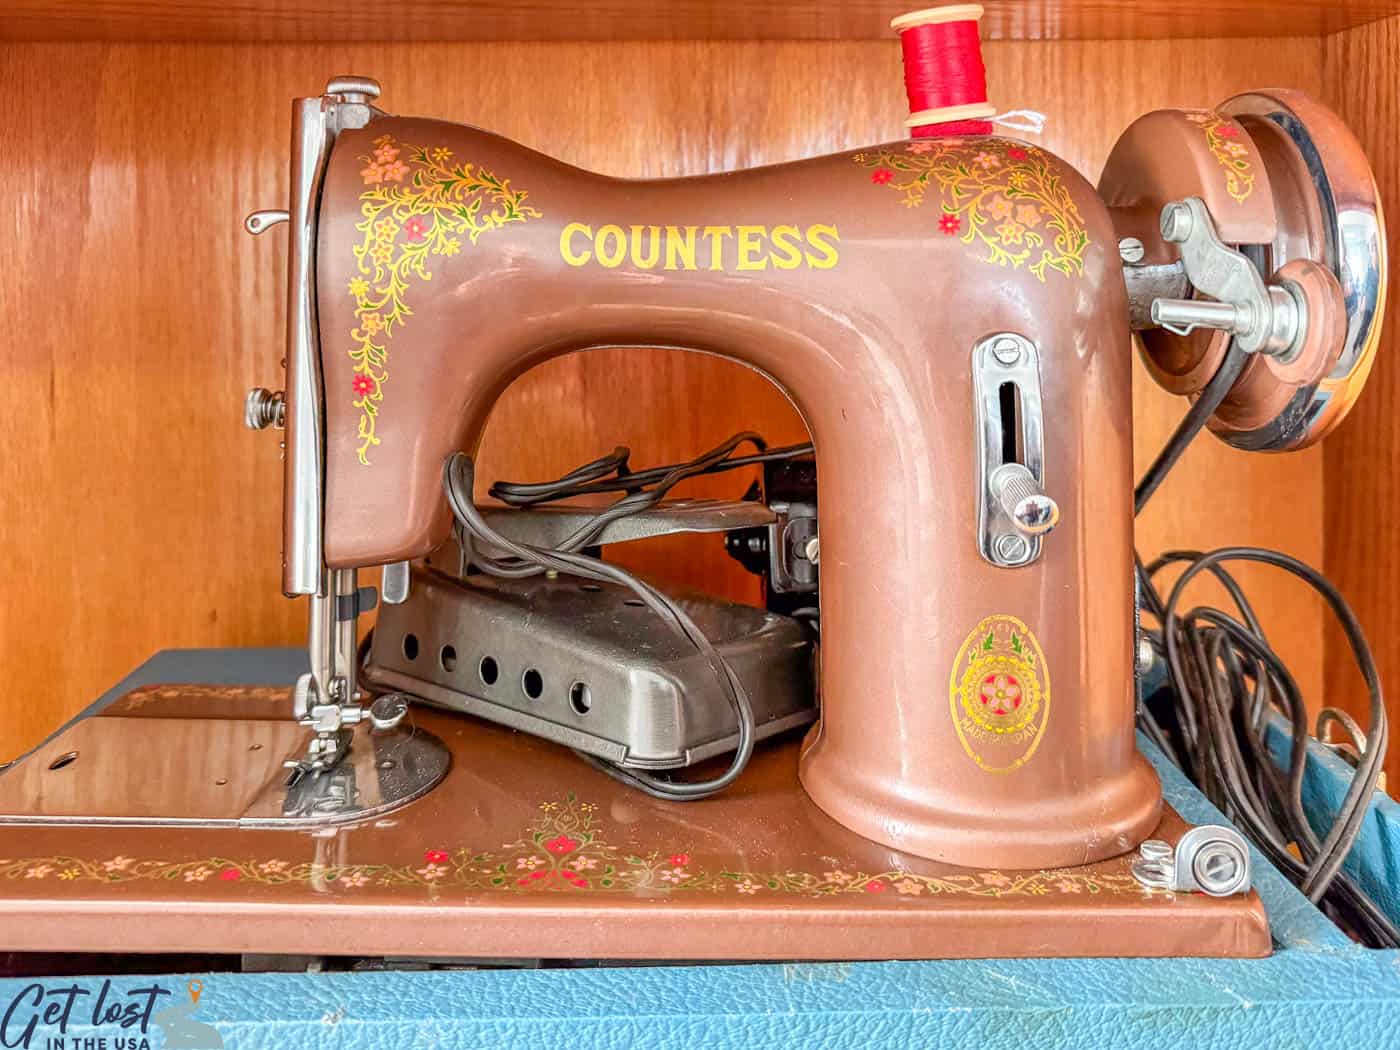 Countess sewing machine.